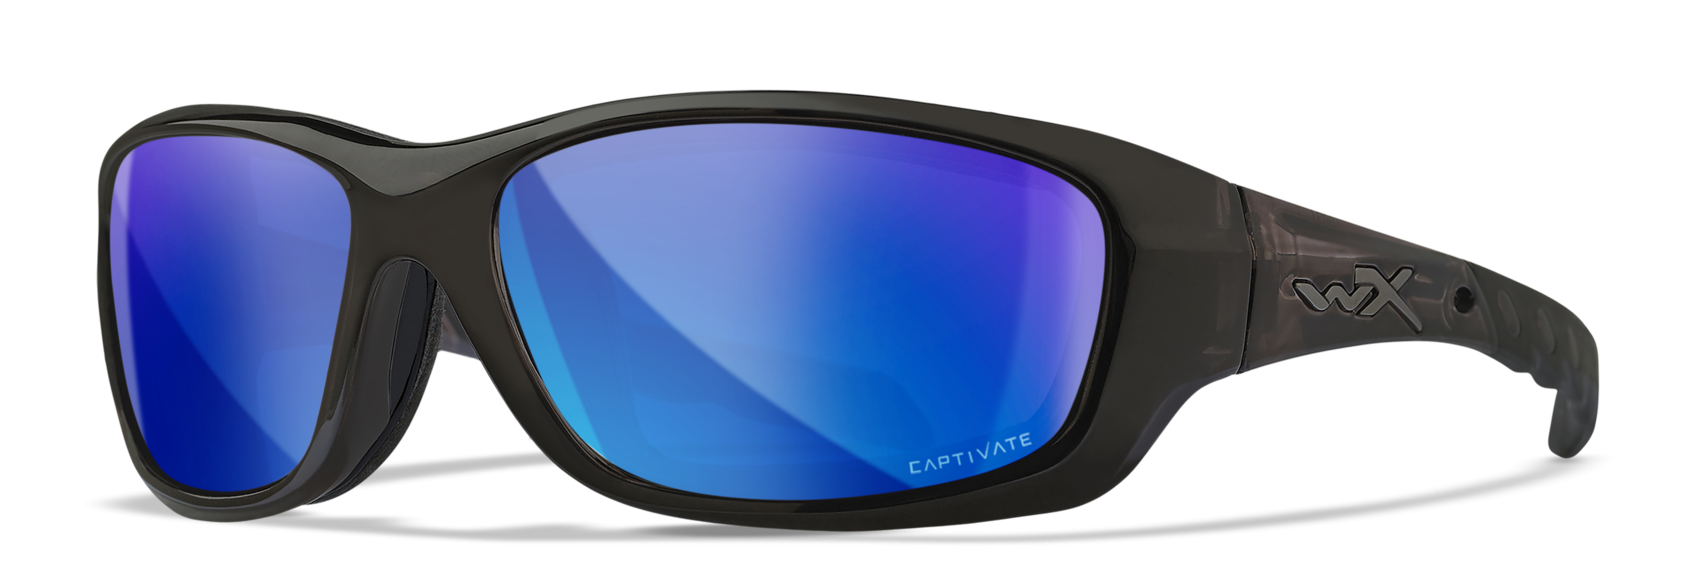 WX Gravity - Fishing Sunglasses